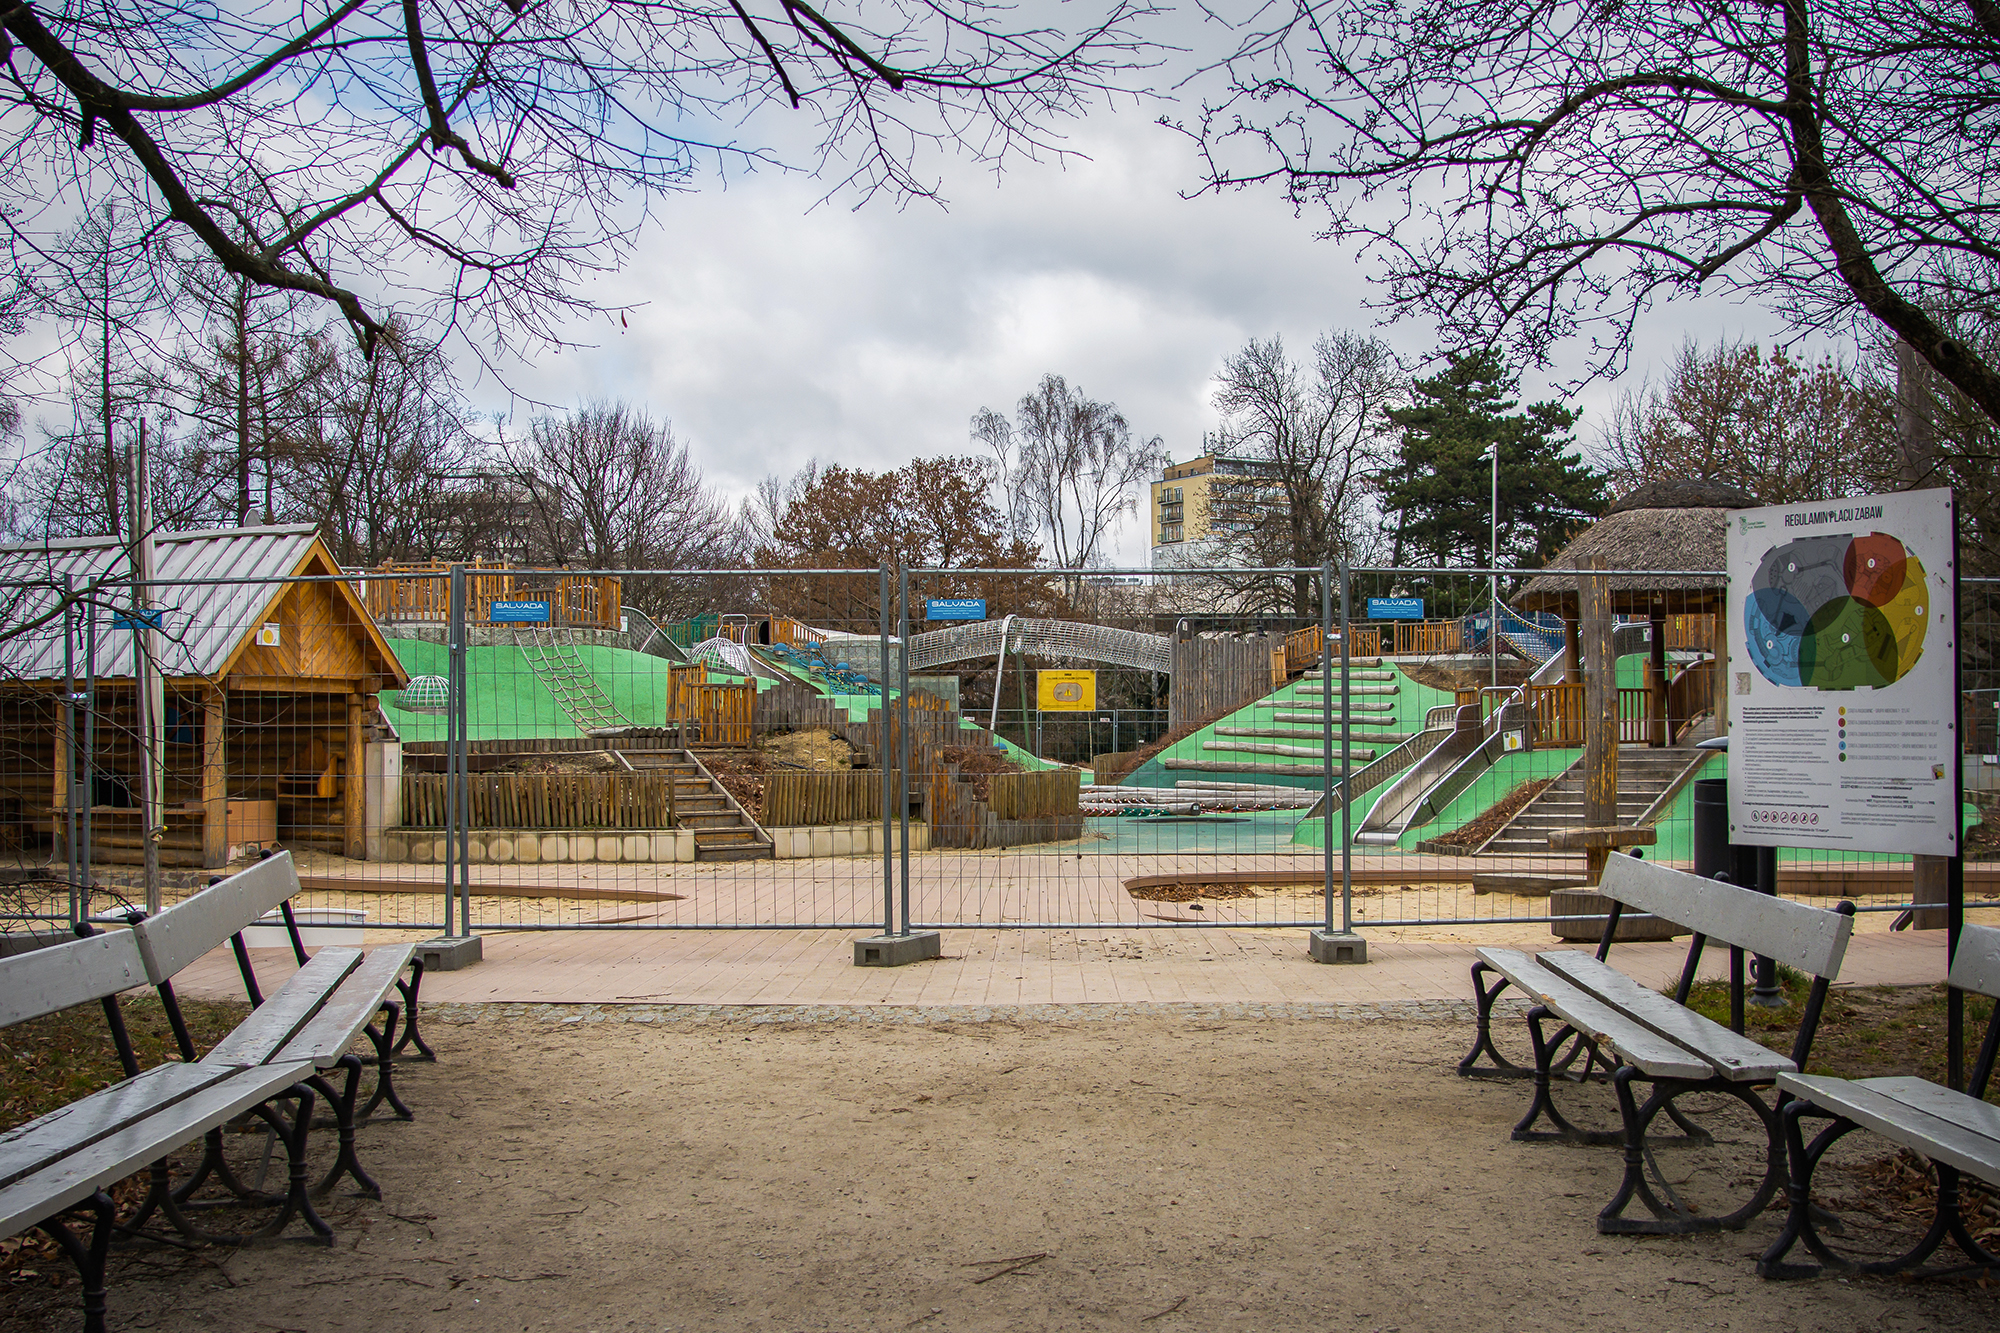 Zamknięty plac zabaw w Parku Ujazdowskim - ogrodzenie stoi wokół urządzeń do zabawy